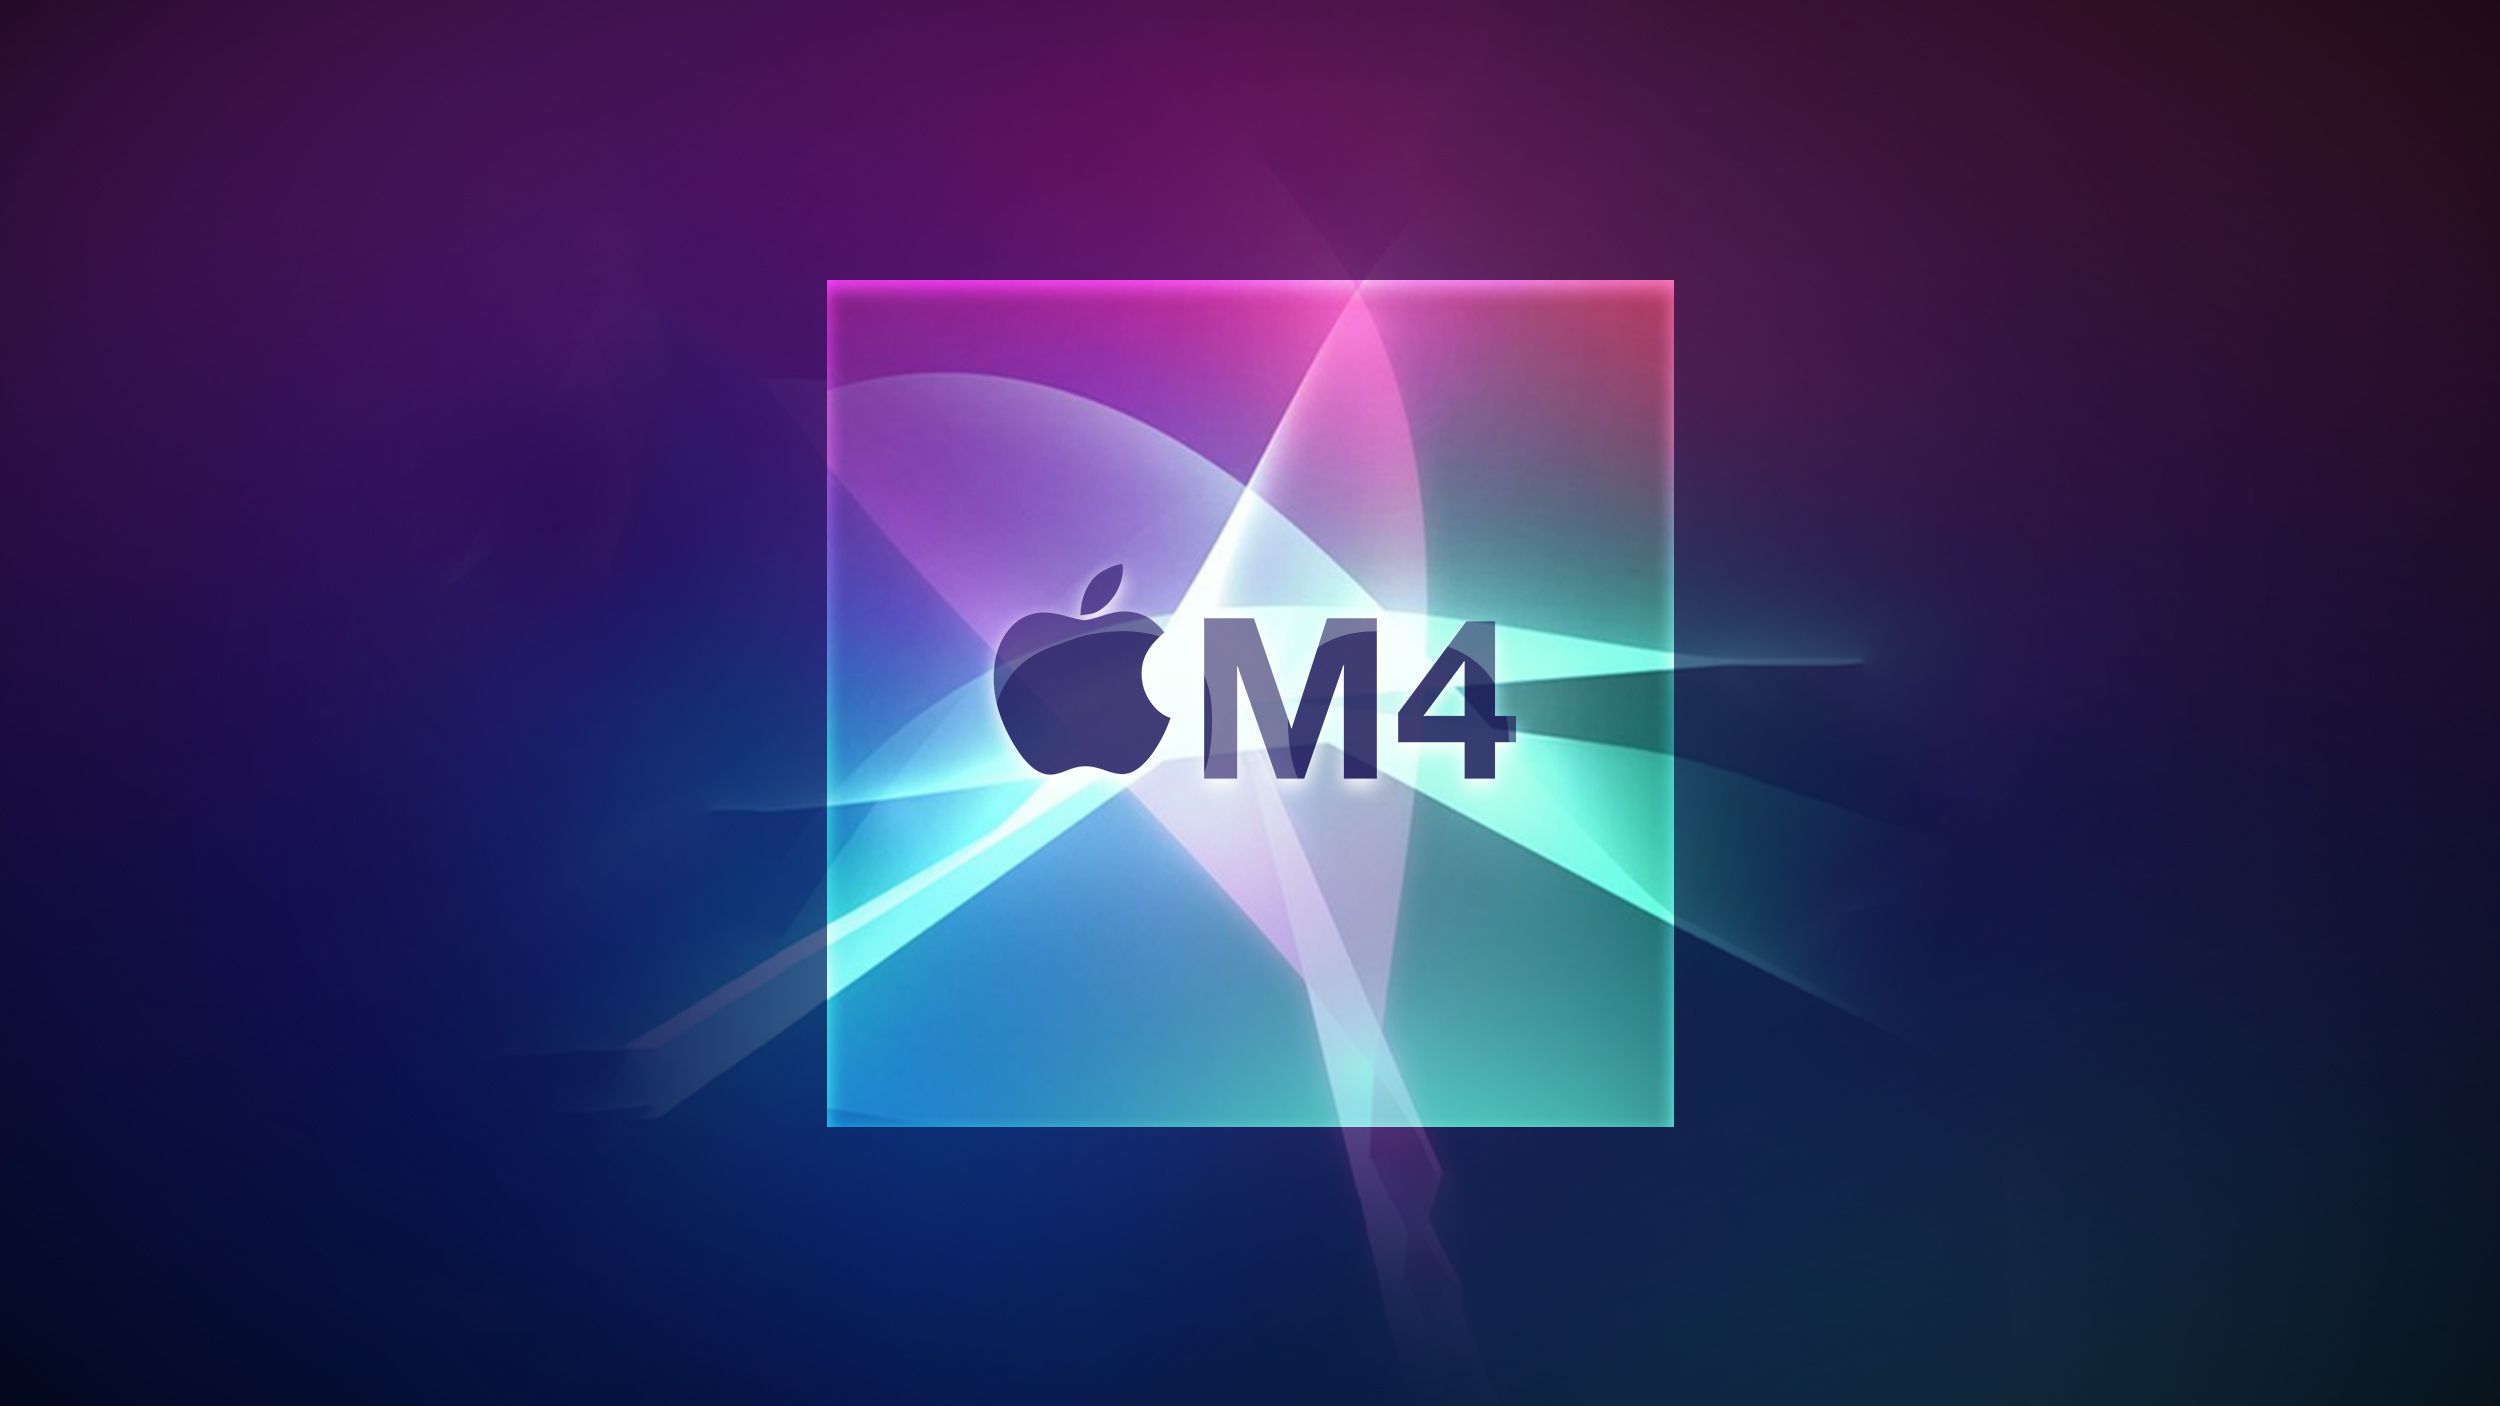 Linha Apple M4 MacBook Pro: o que esperar